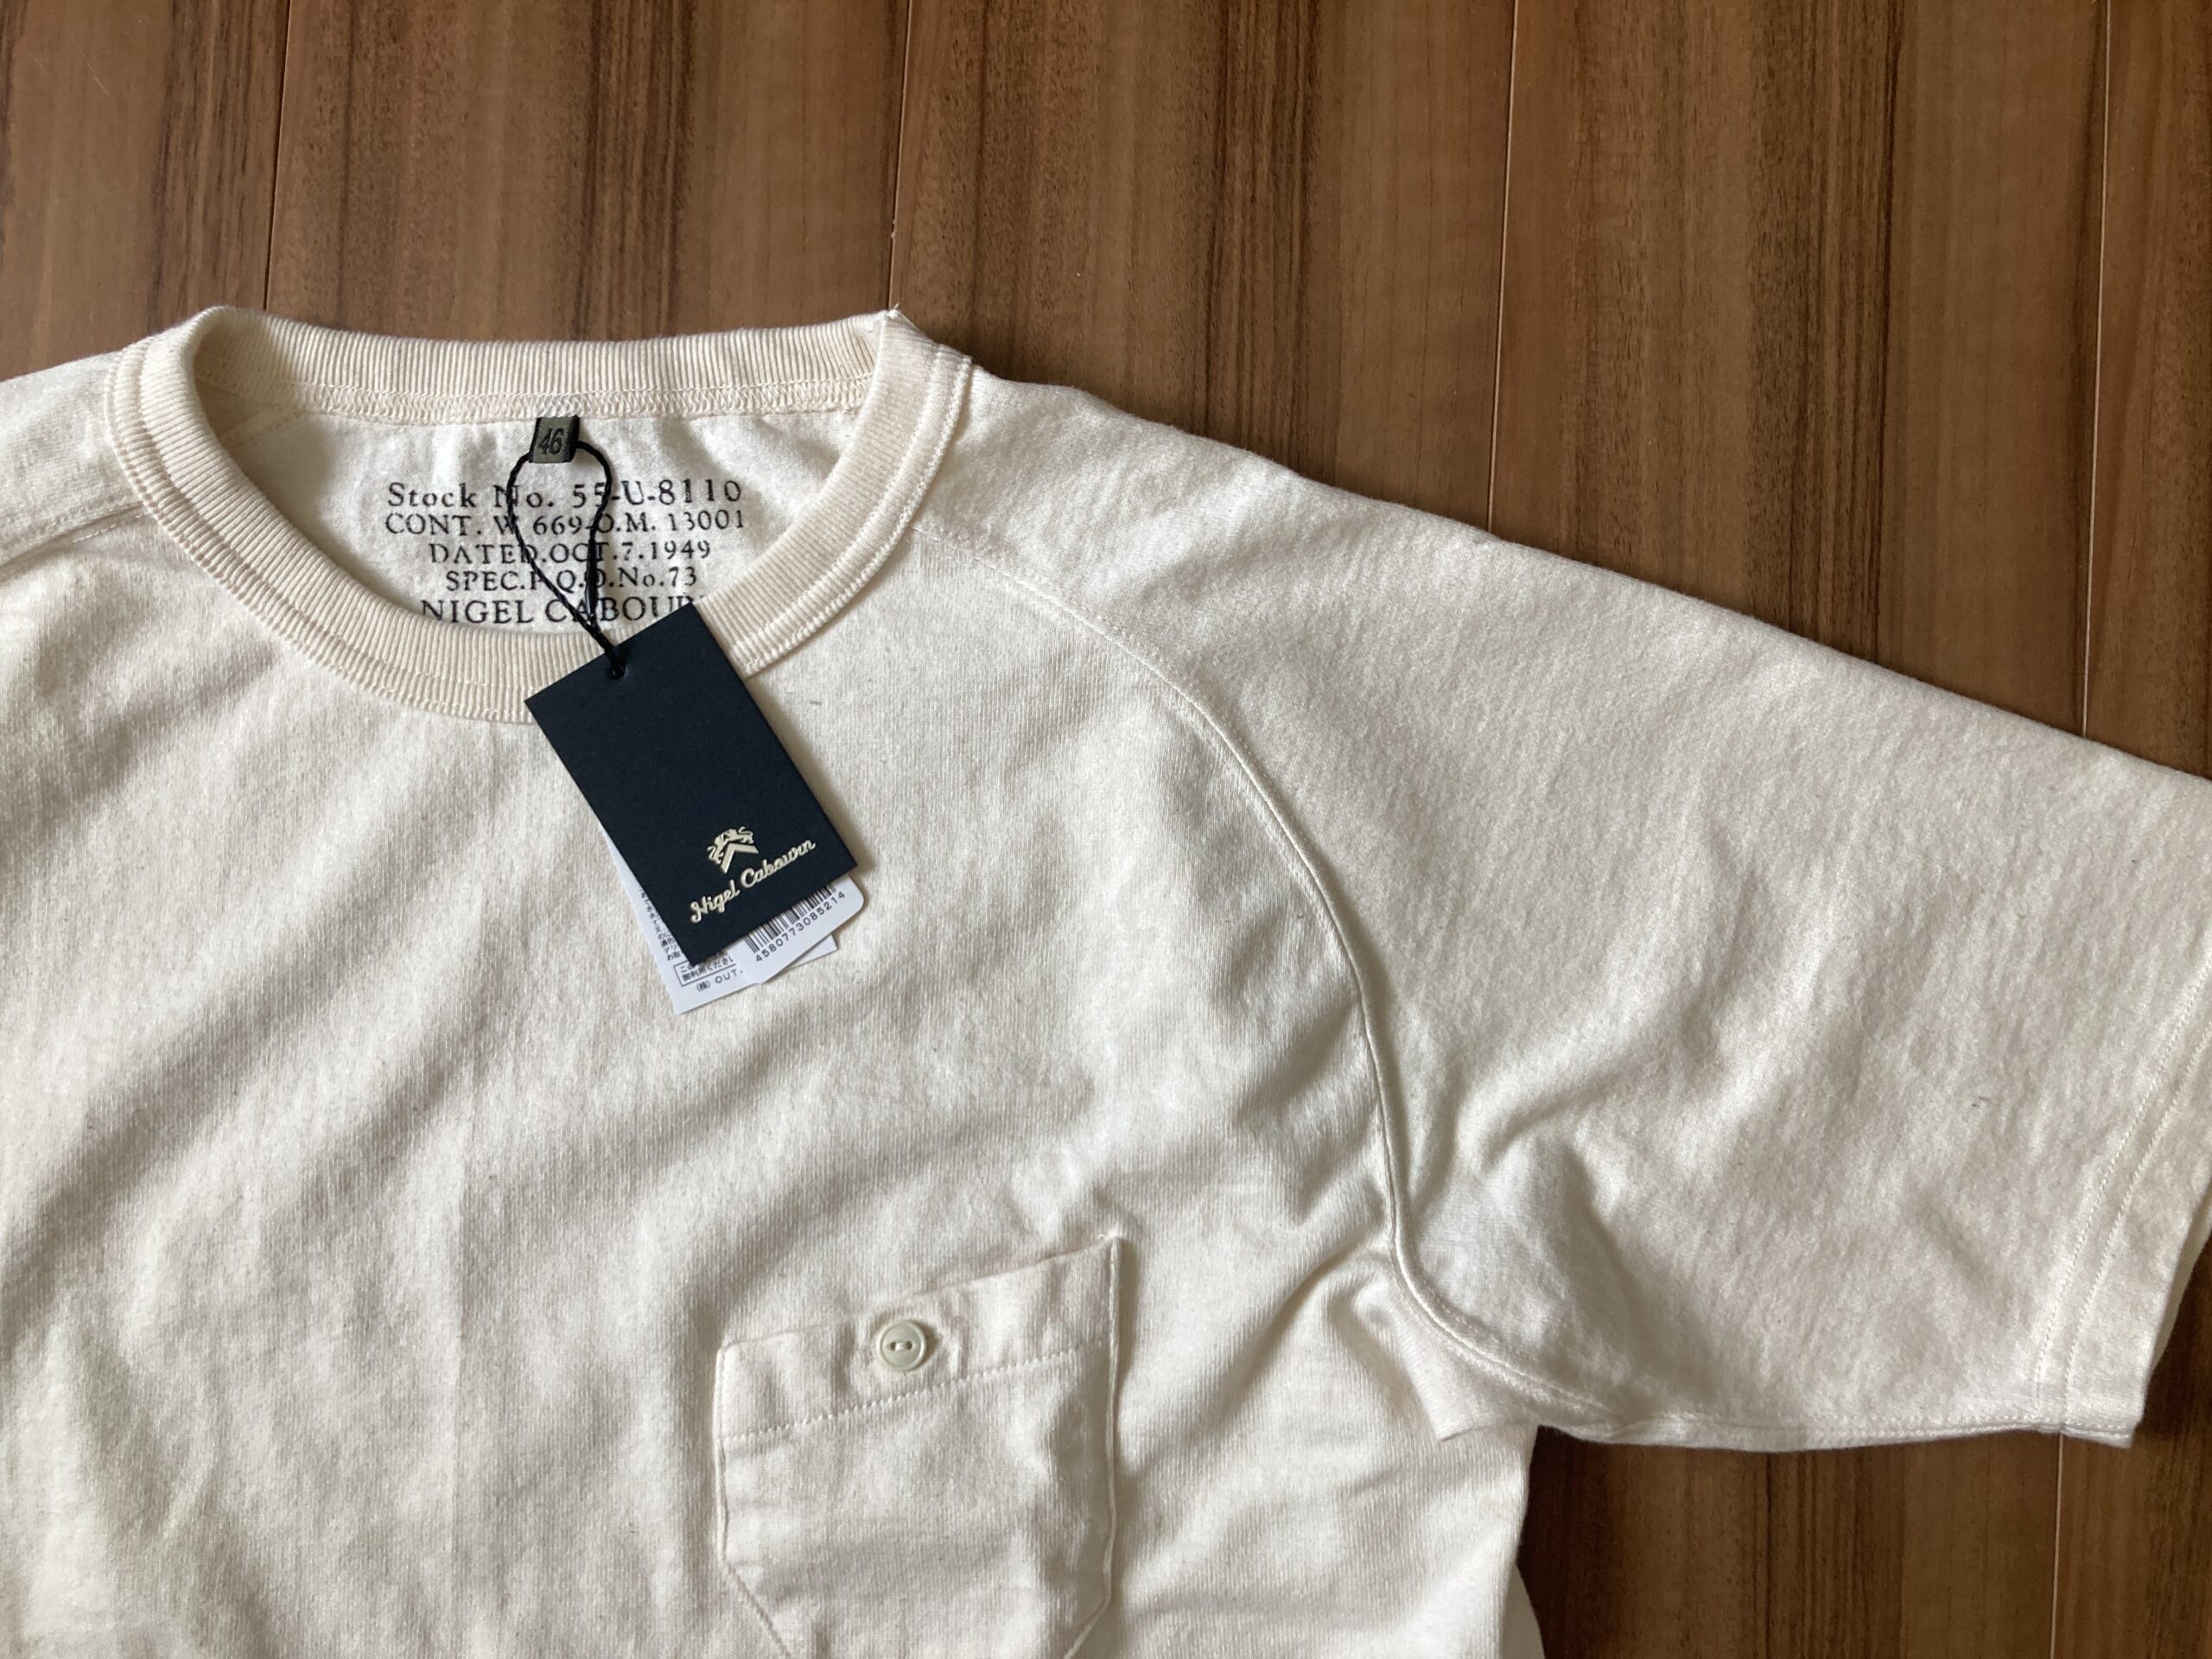 ナイジェル・ケーボン オンス ベーシックTシャツ ―― 購入当初の表情